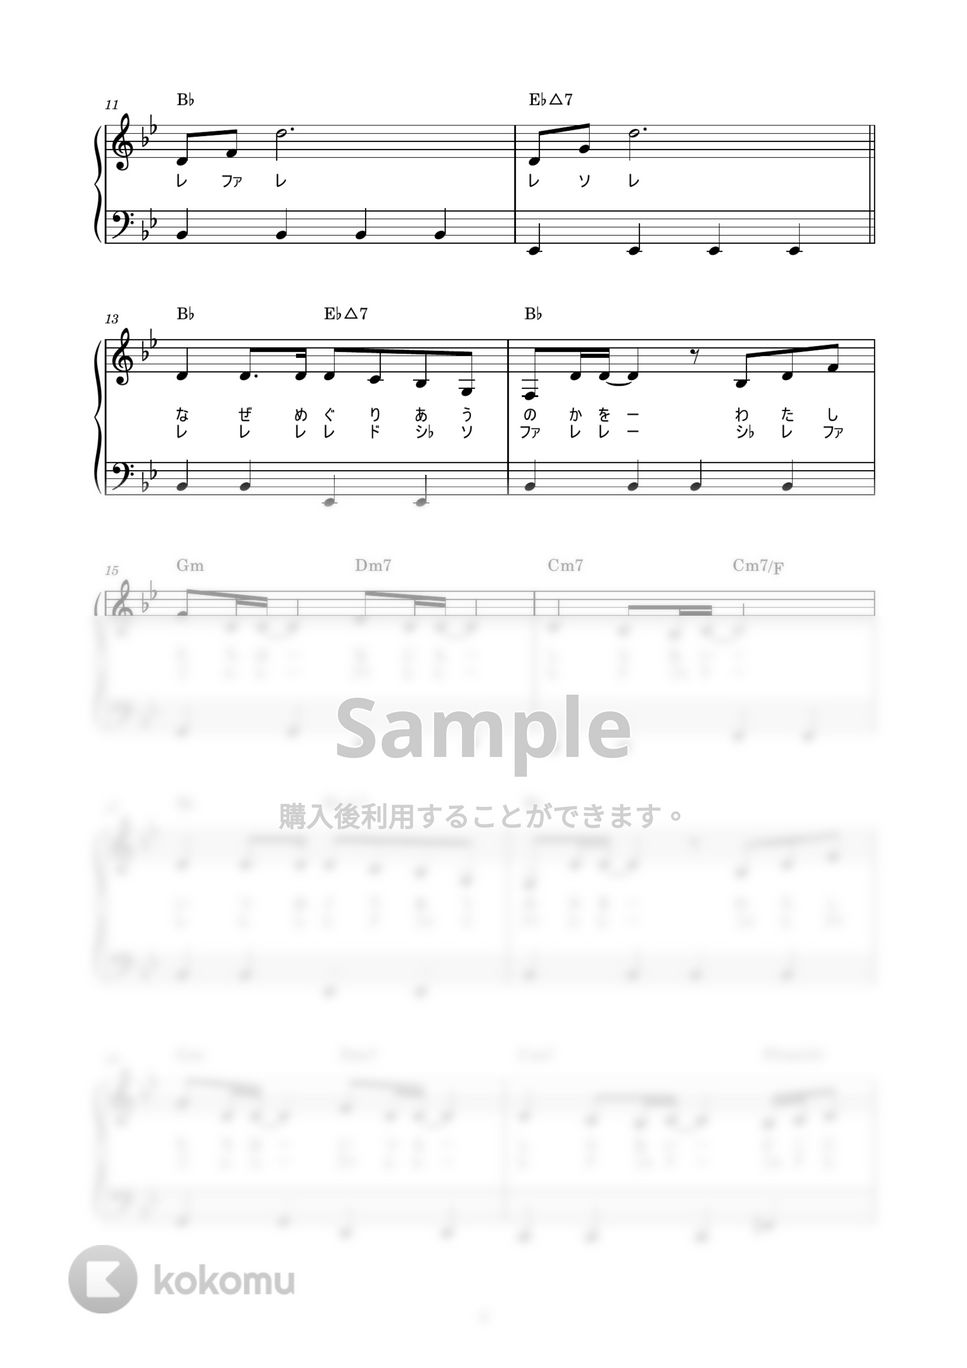 中島みゆき - 糸 (かんたん / 歌詞付き / ドレミ付き / 初心者) by piano.tokyo